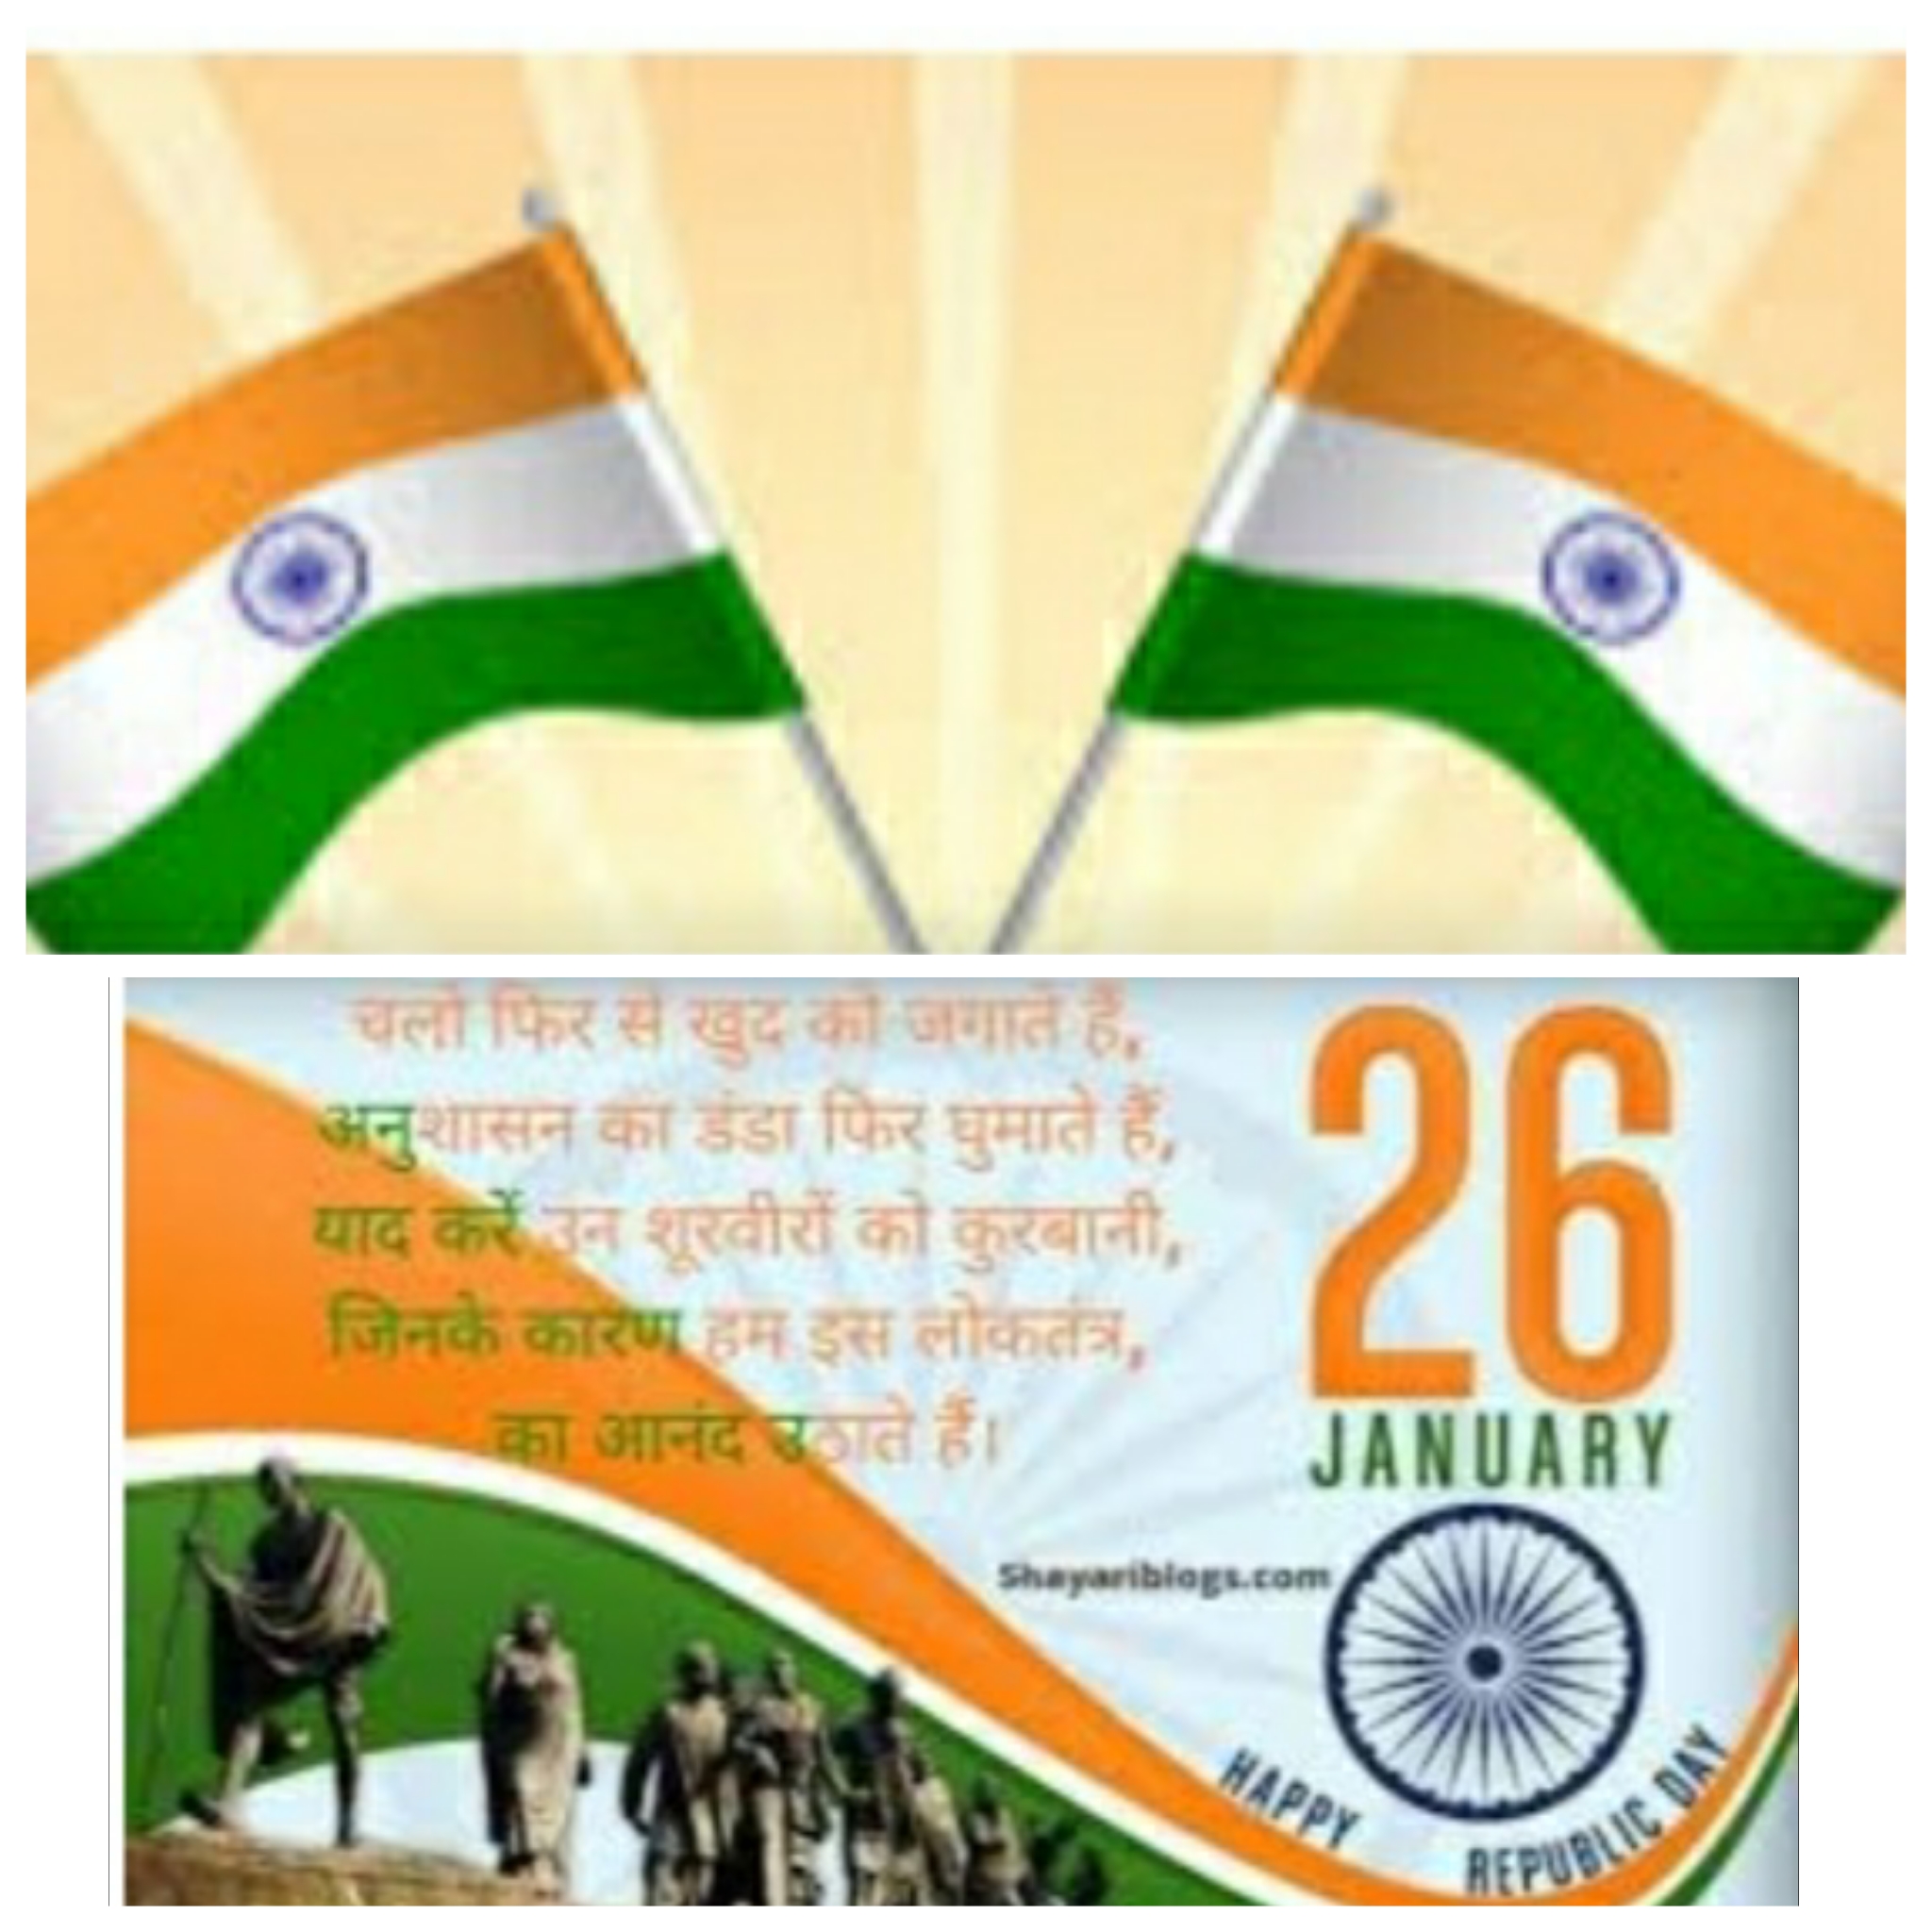 गणतंत्र दिवस की अनंत अनंत शुभकामनाओं सहित राष्ट्र वंदना।।